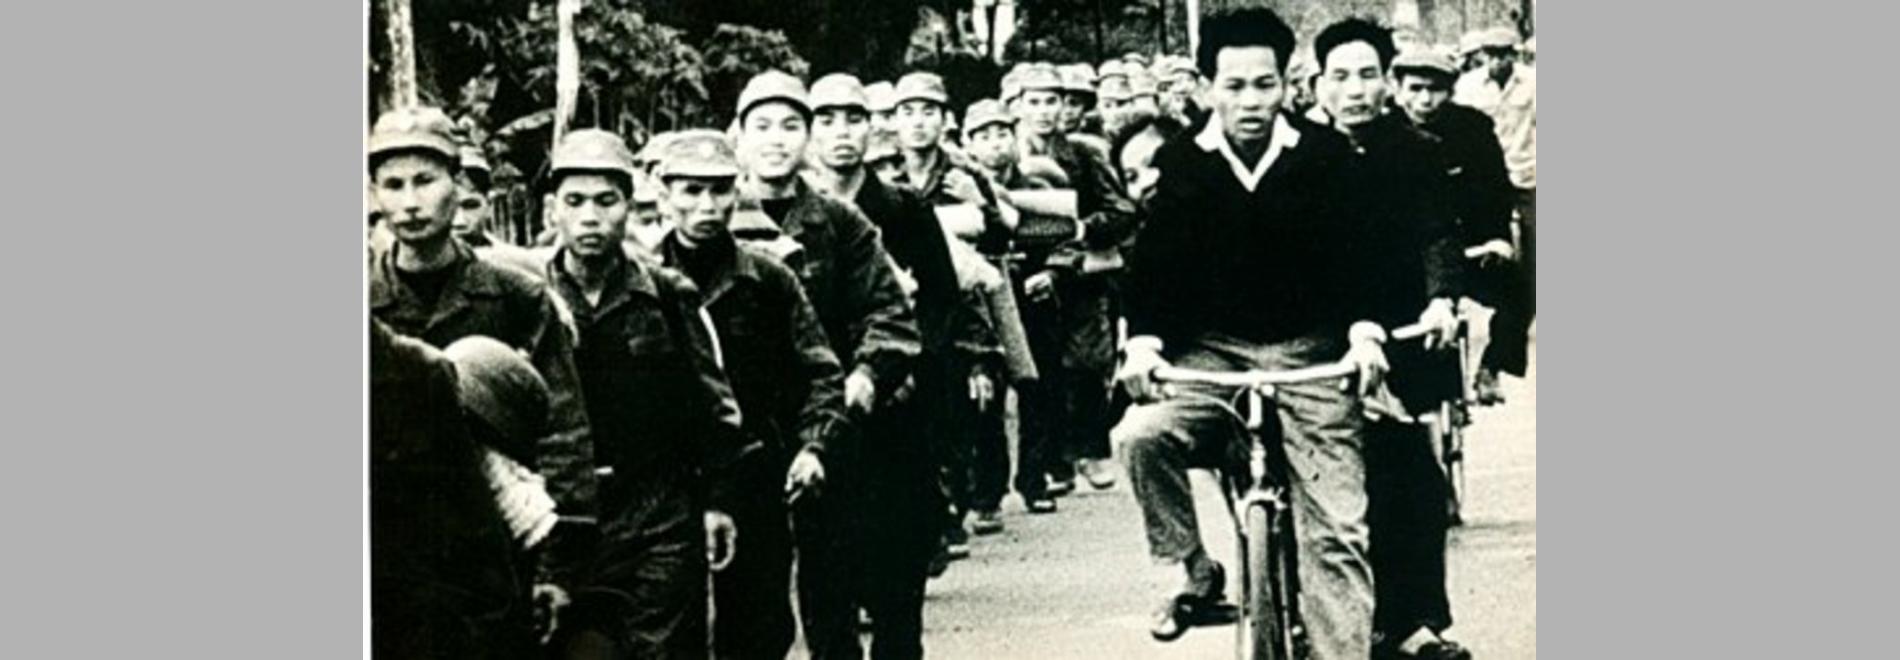 Hanoi, martes 13 (Santiago Álvarez, 1967)